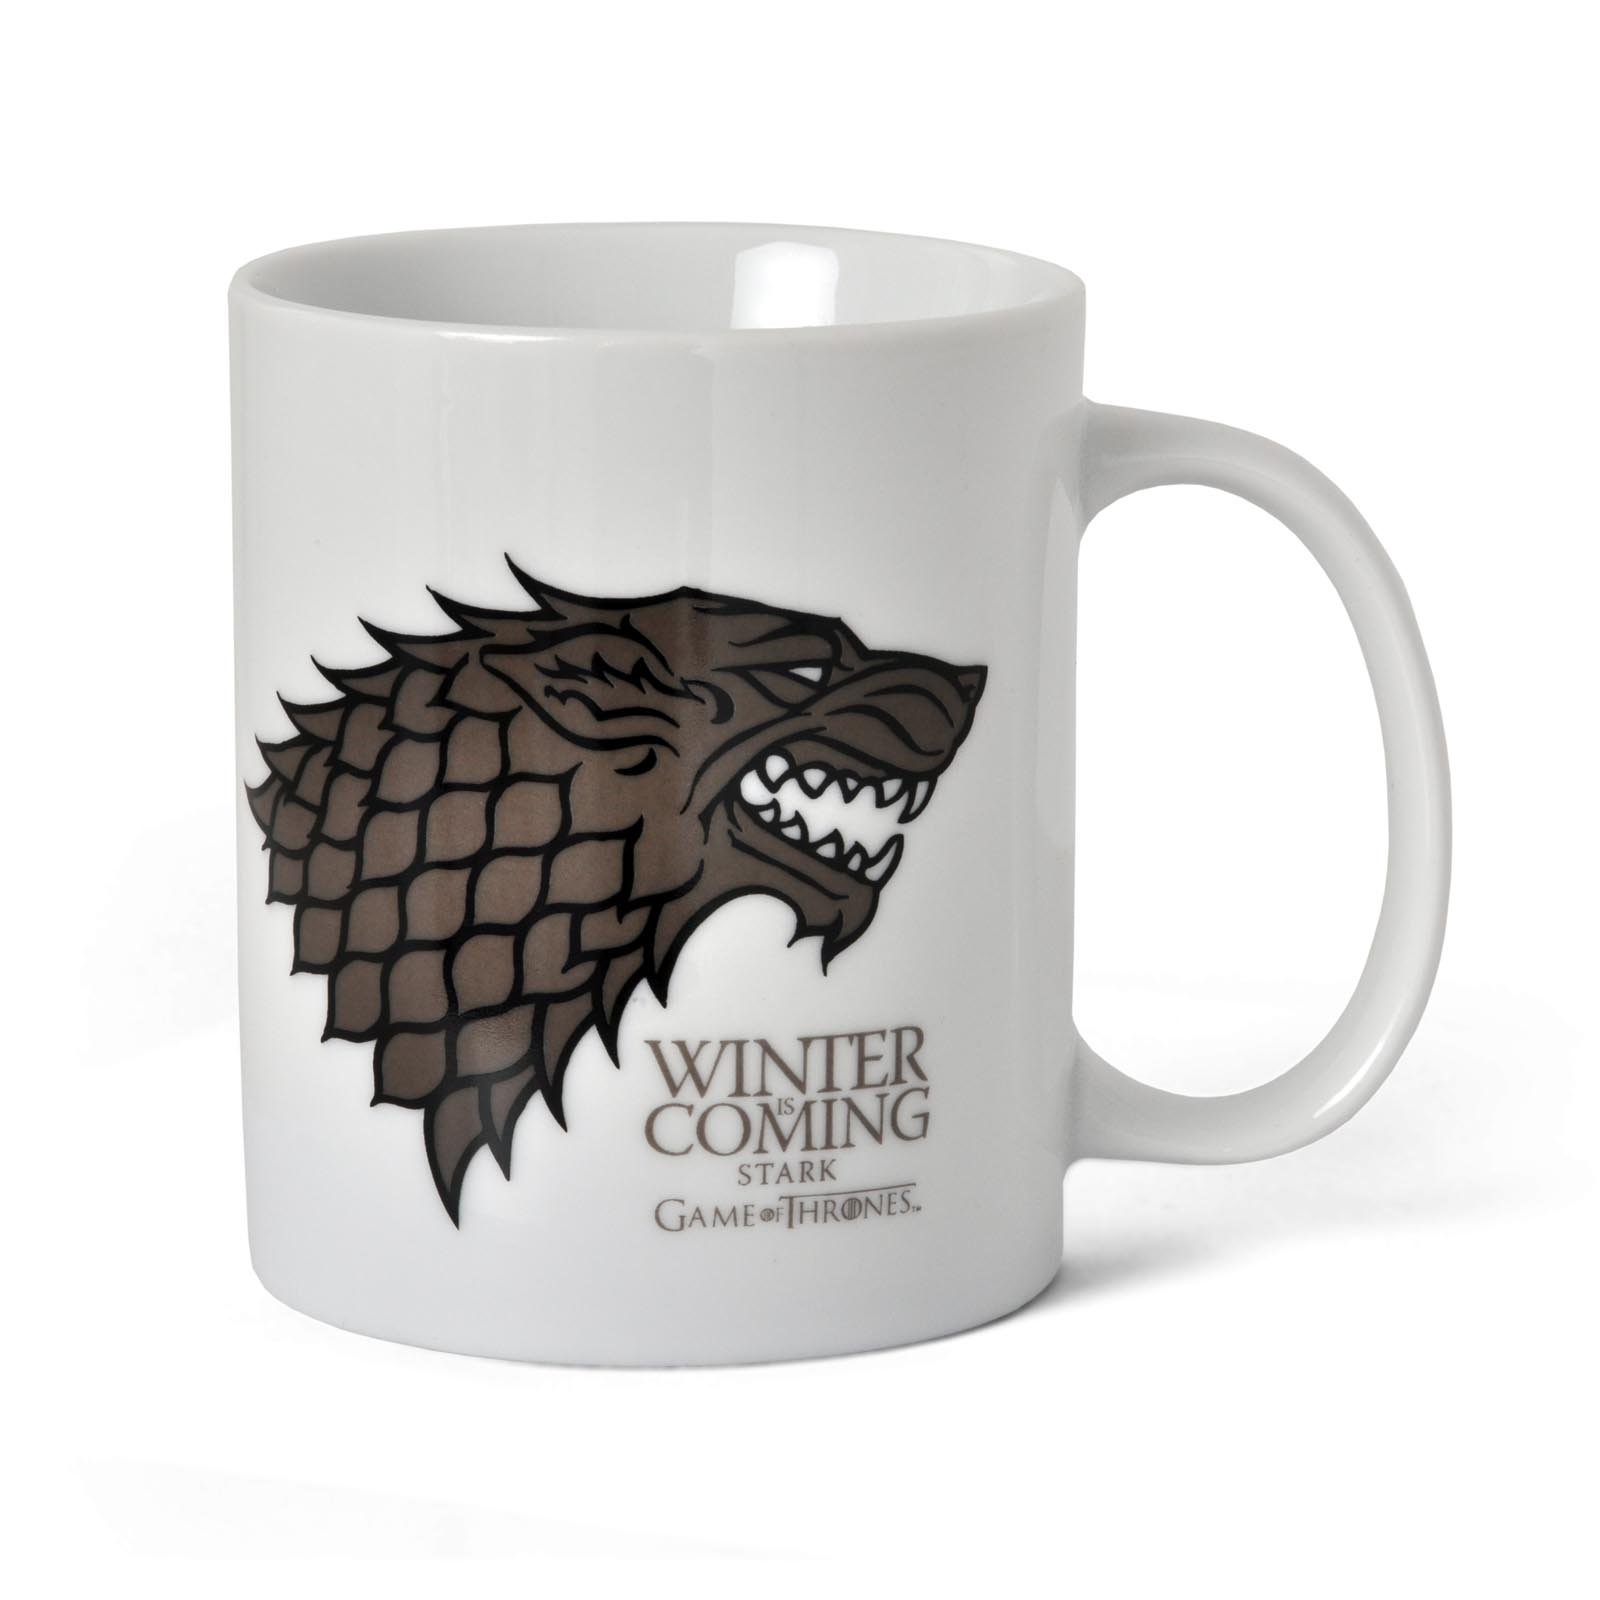 Game of Thrones - House Stark Tasse weiß mit Schattenwolf Wappen Keramik in Geschenkverpackung